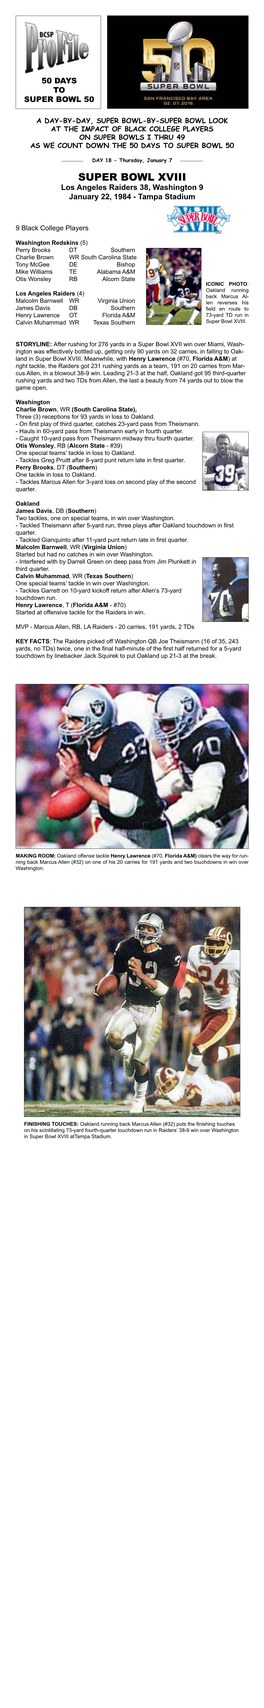 Super Bowl XVIII Los Angeles Raiders 38, Washington 9 January 22, 1984 - Tampa Stadium